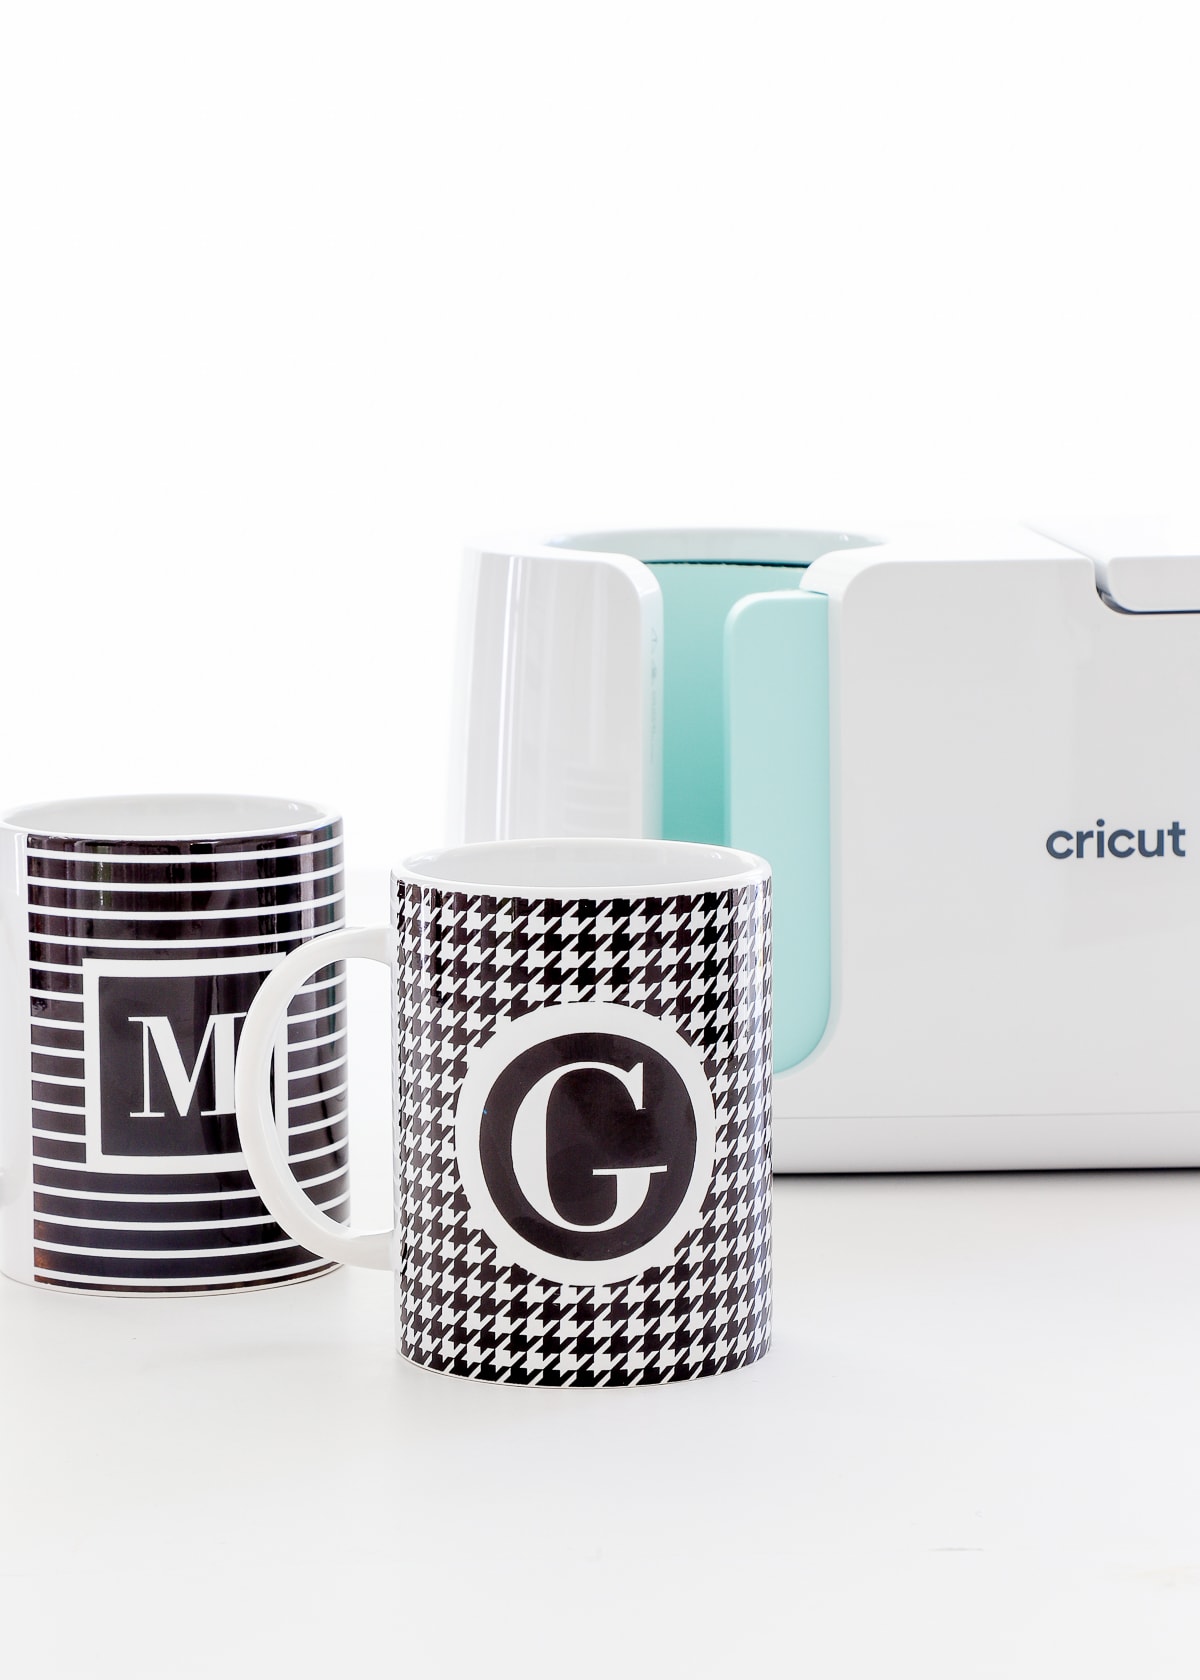 About Cricut Mug Press